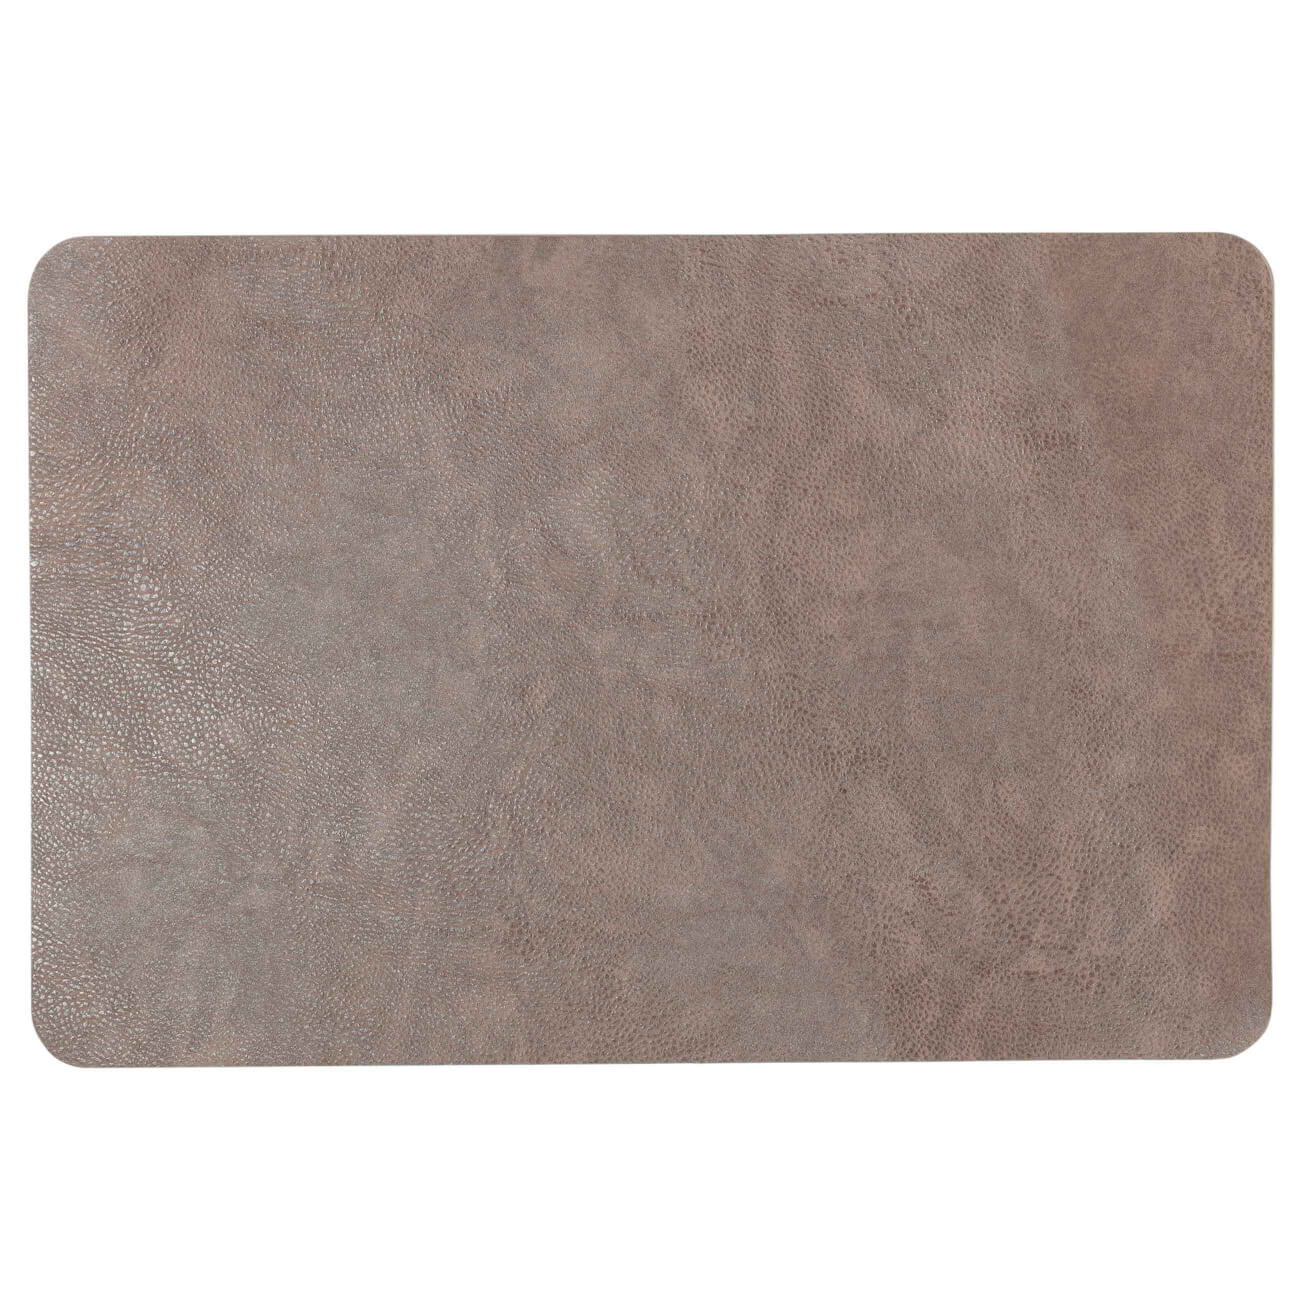 Салфетка под приборы, 30х45 см, ПВХ, прямоугольная, коричневая, Rock универсальная салфетка лайма